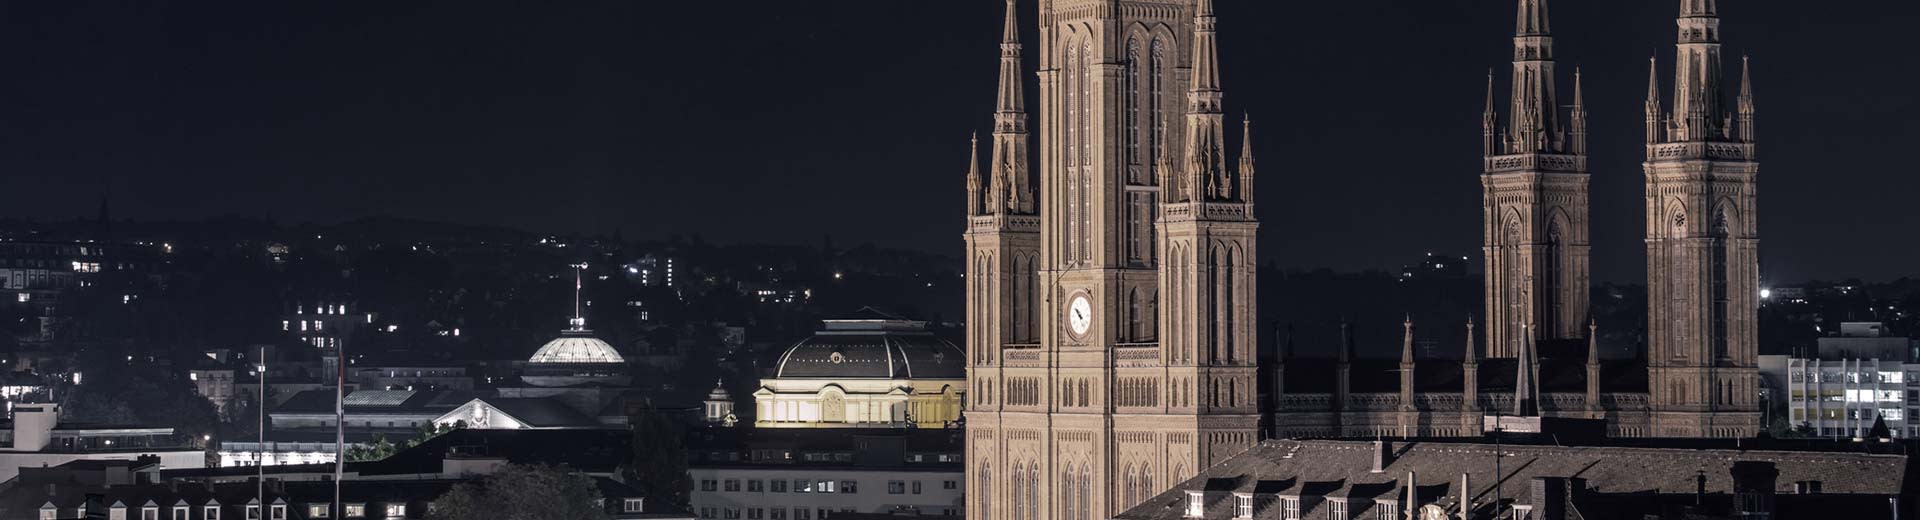 La célèbre Marktkirche domine le premier plan de Wiesbaden, avec les lumières des bâtiments au loin.	